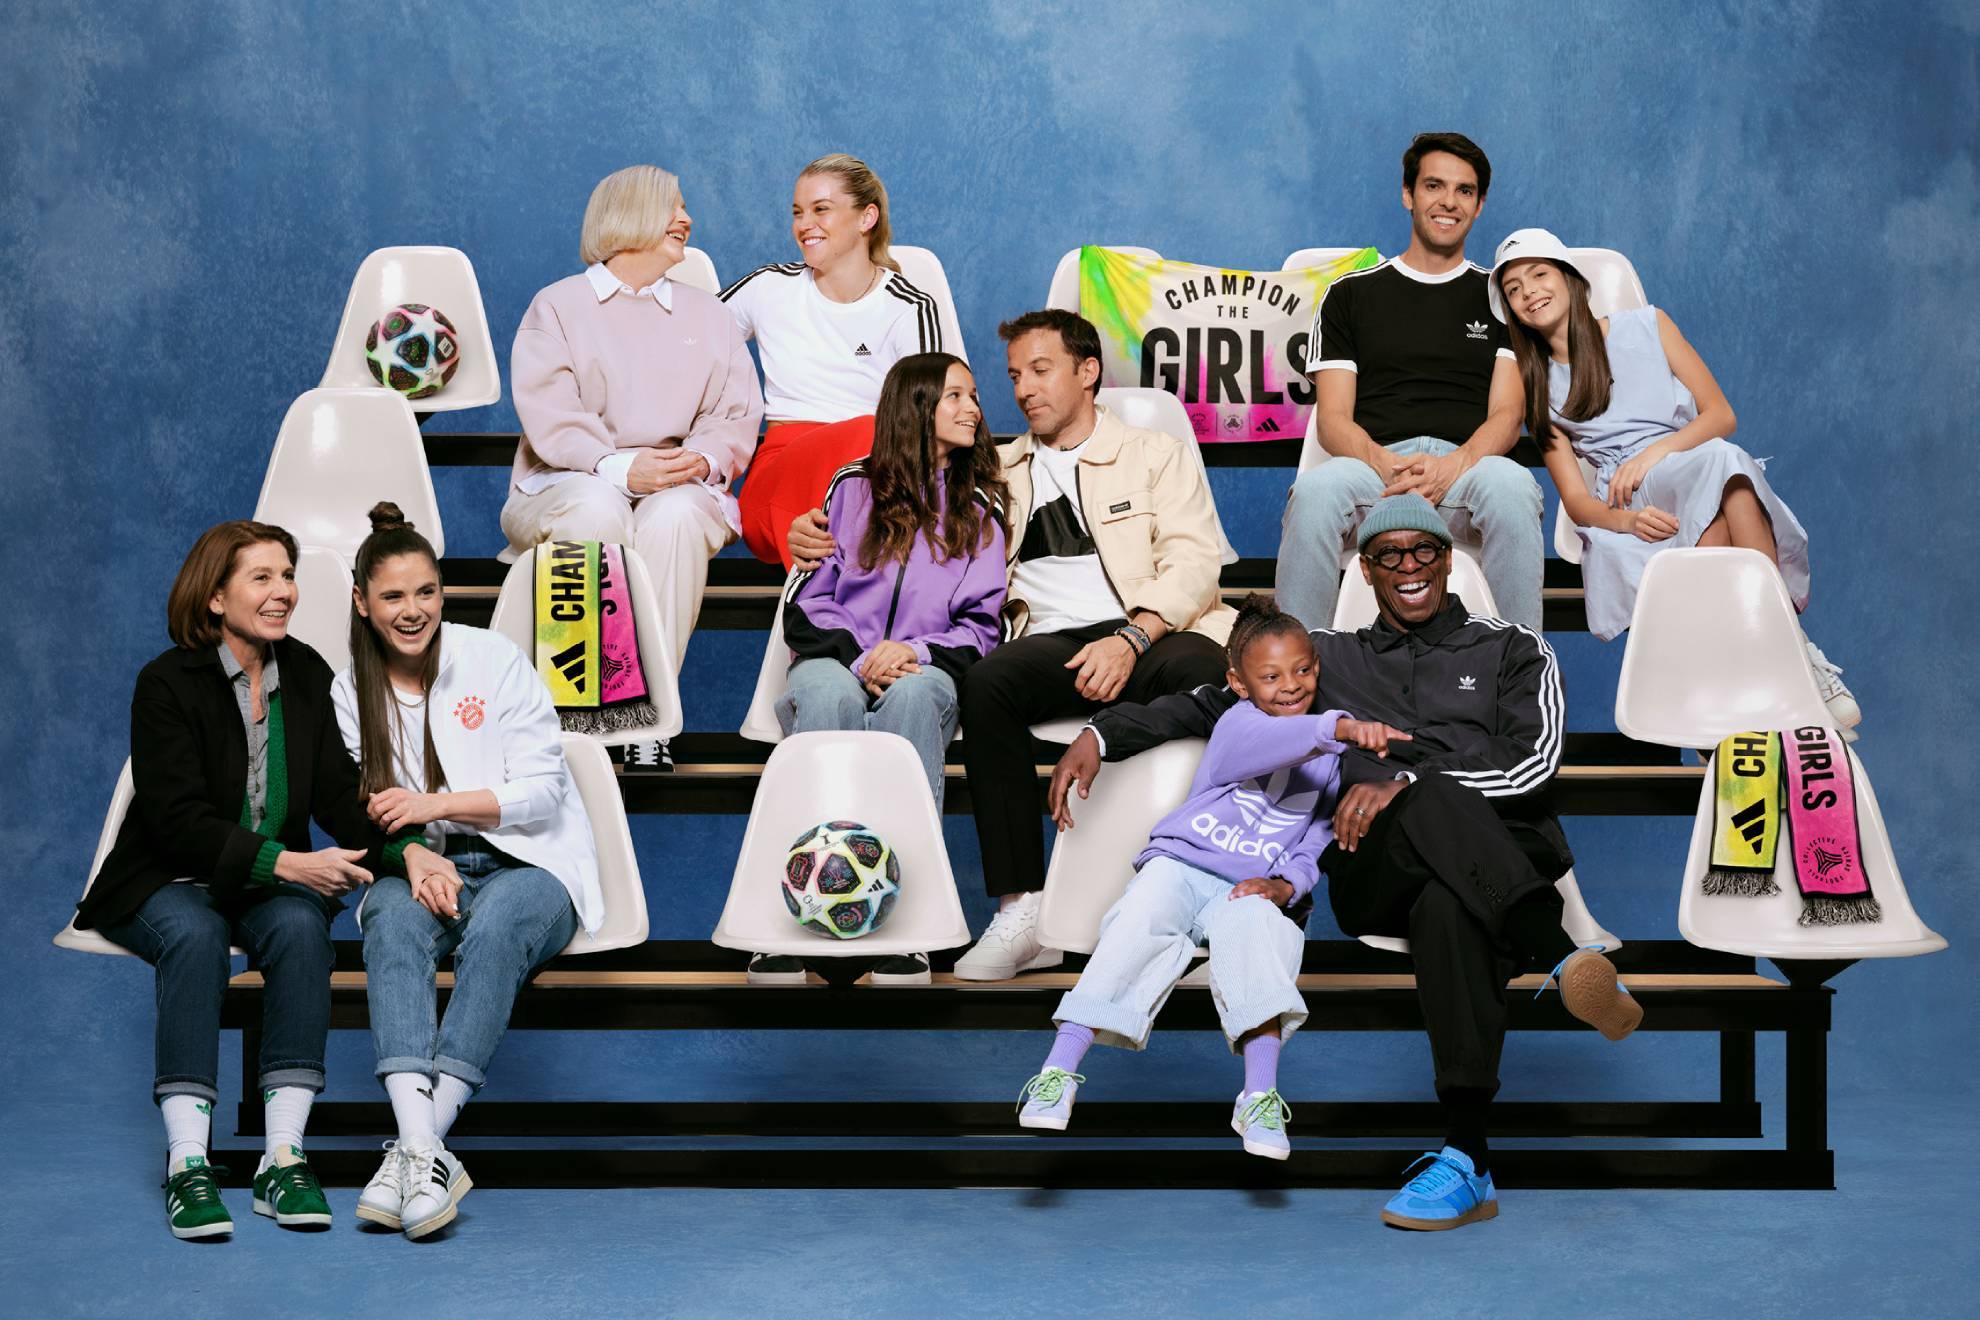 Protagonistas de la campaña 'Champions The Girls' de Adidas / Adidas